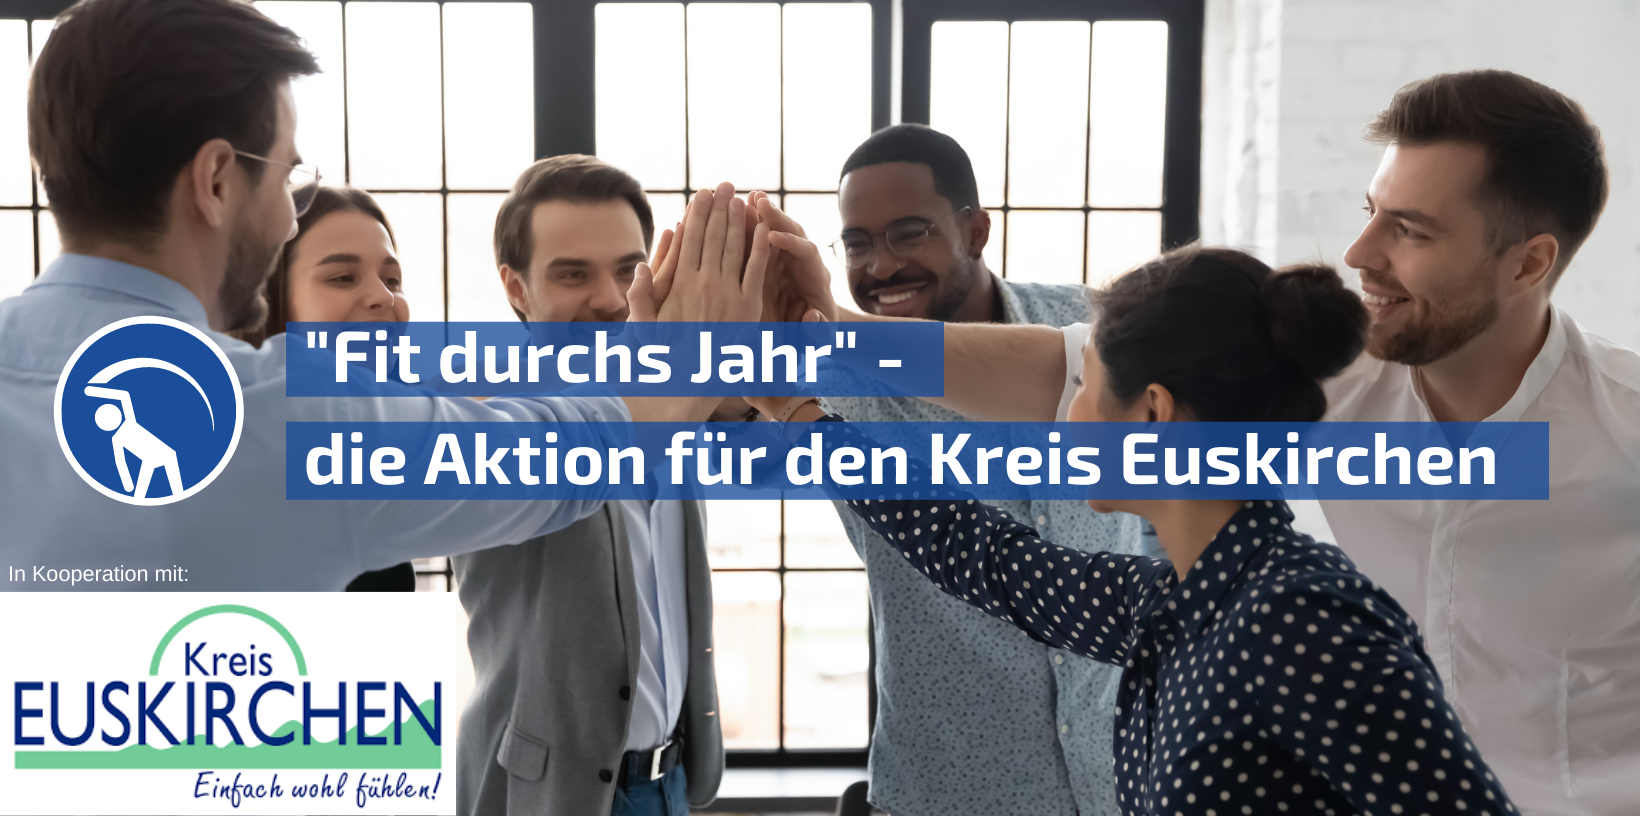 Gruppe von Kollegen gibt sich High-Five, "Fit durchs Jahr" Aktion für Kreis Euskirchen.